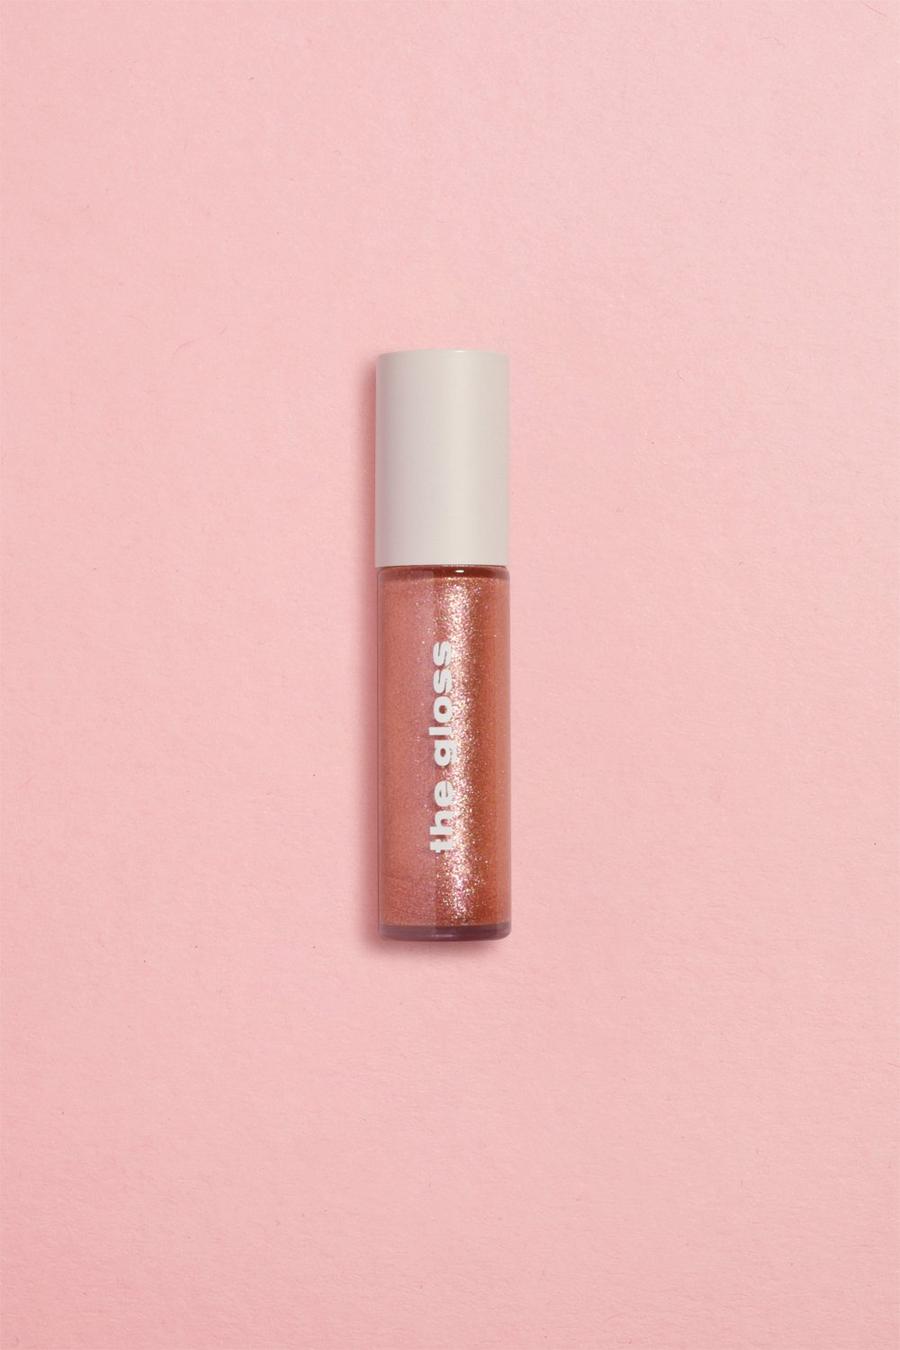 Boohoo Beauty - Le gloss - Rose Shimmer